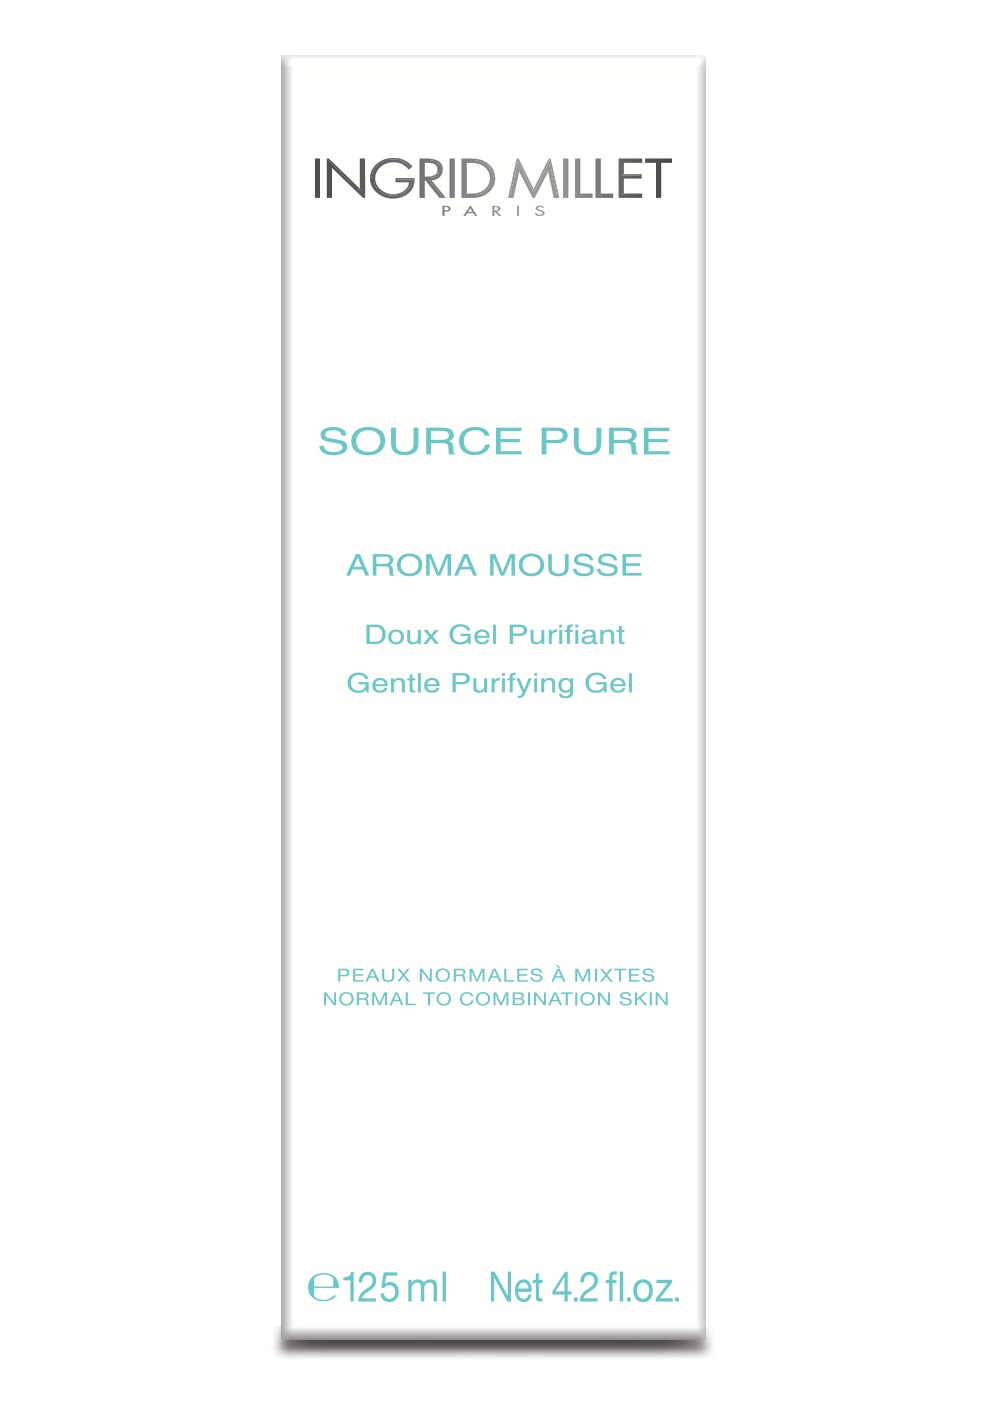 Нежный очищающий гель Source Pure Aroma Mousse Doux Gel Purifiant